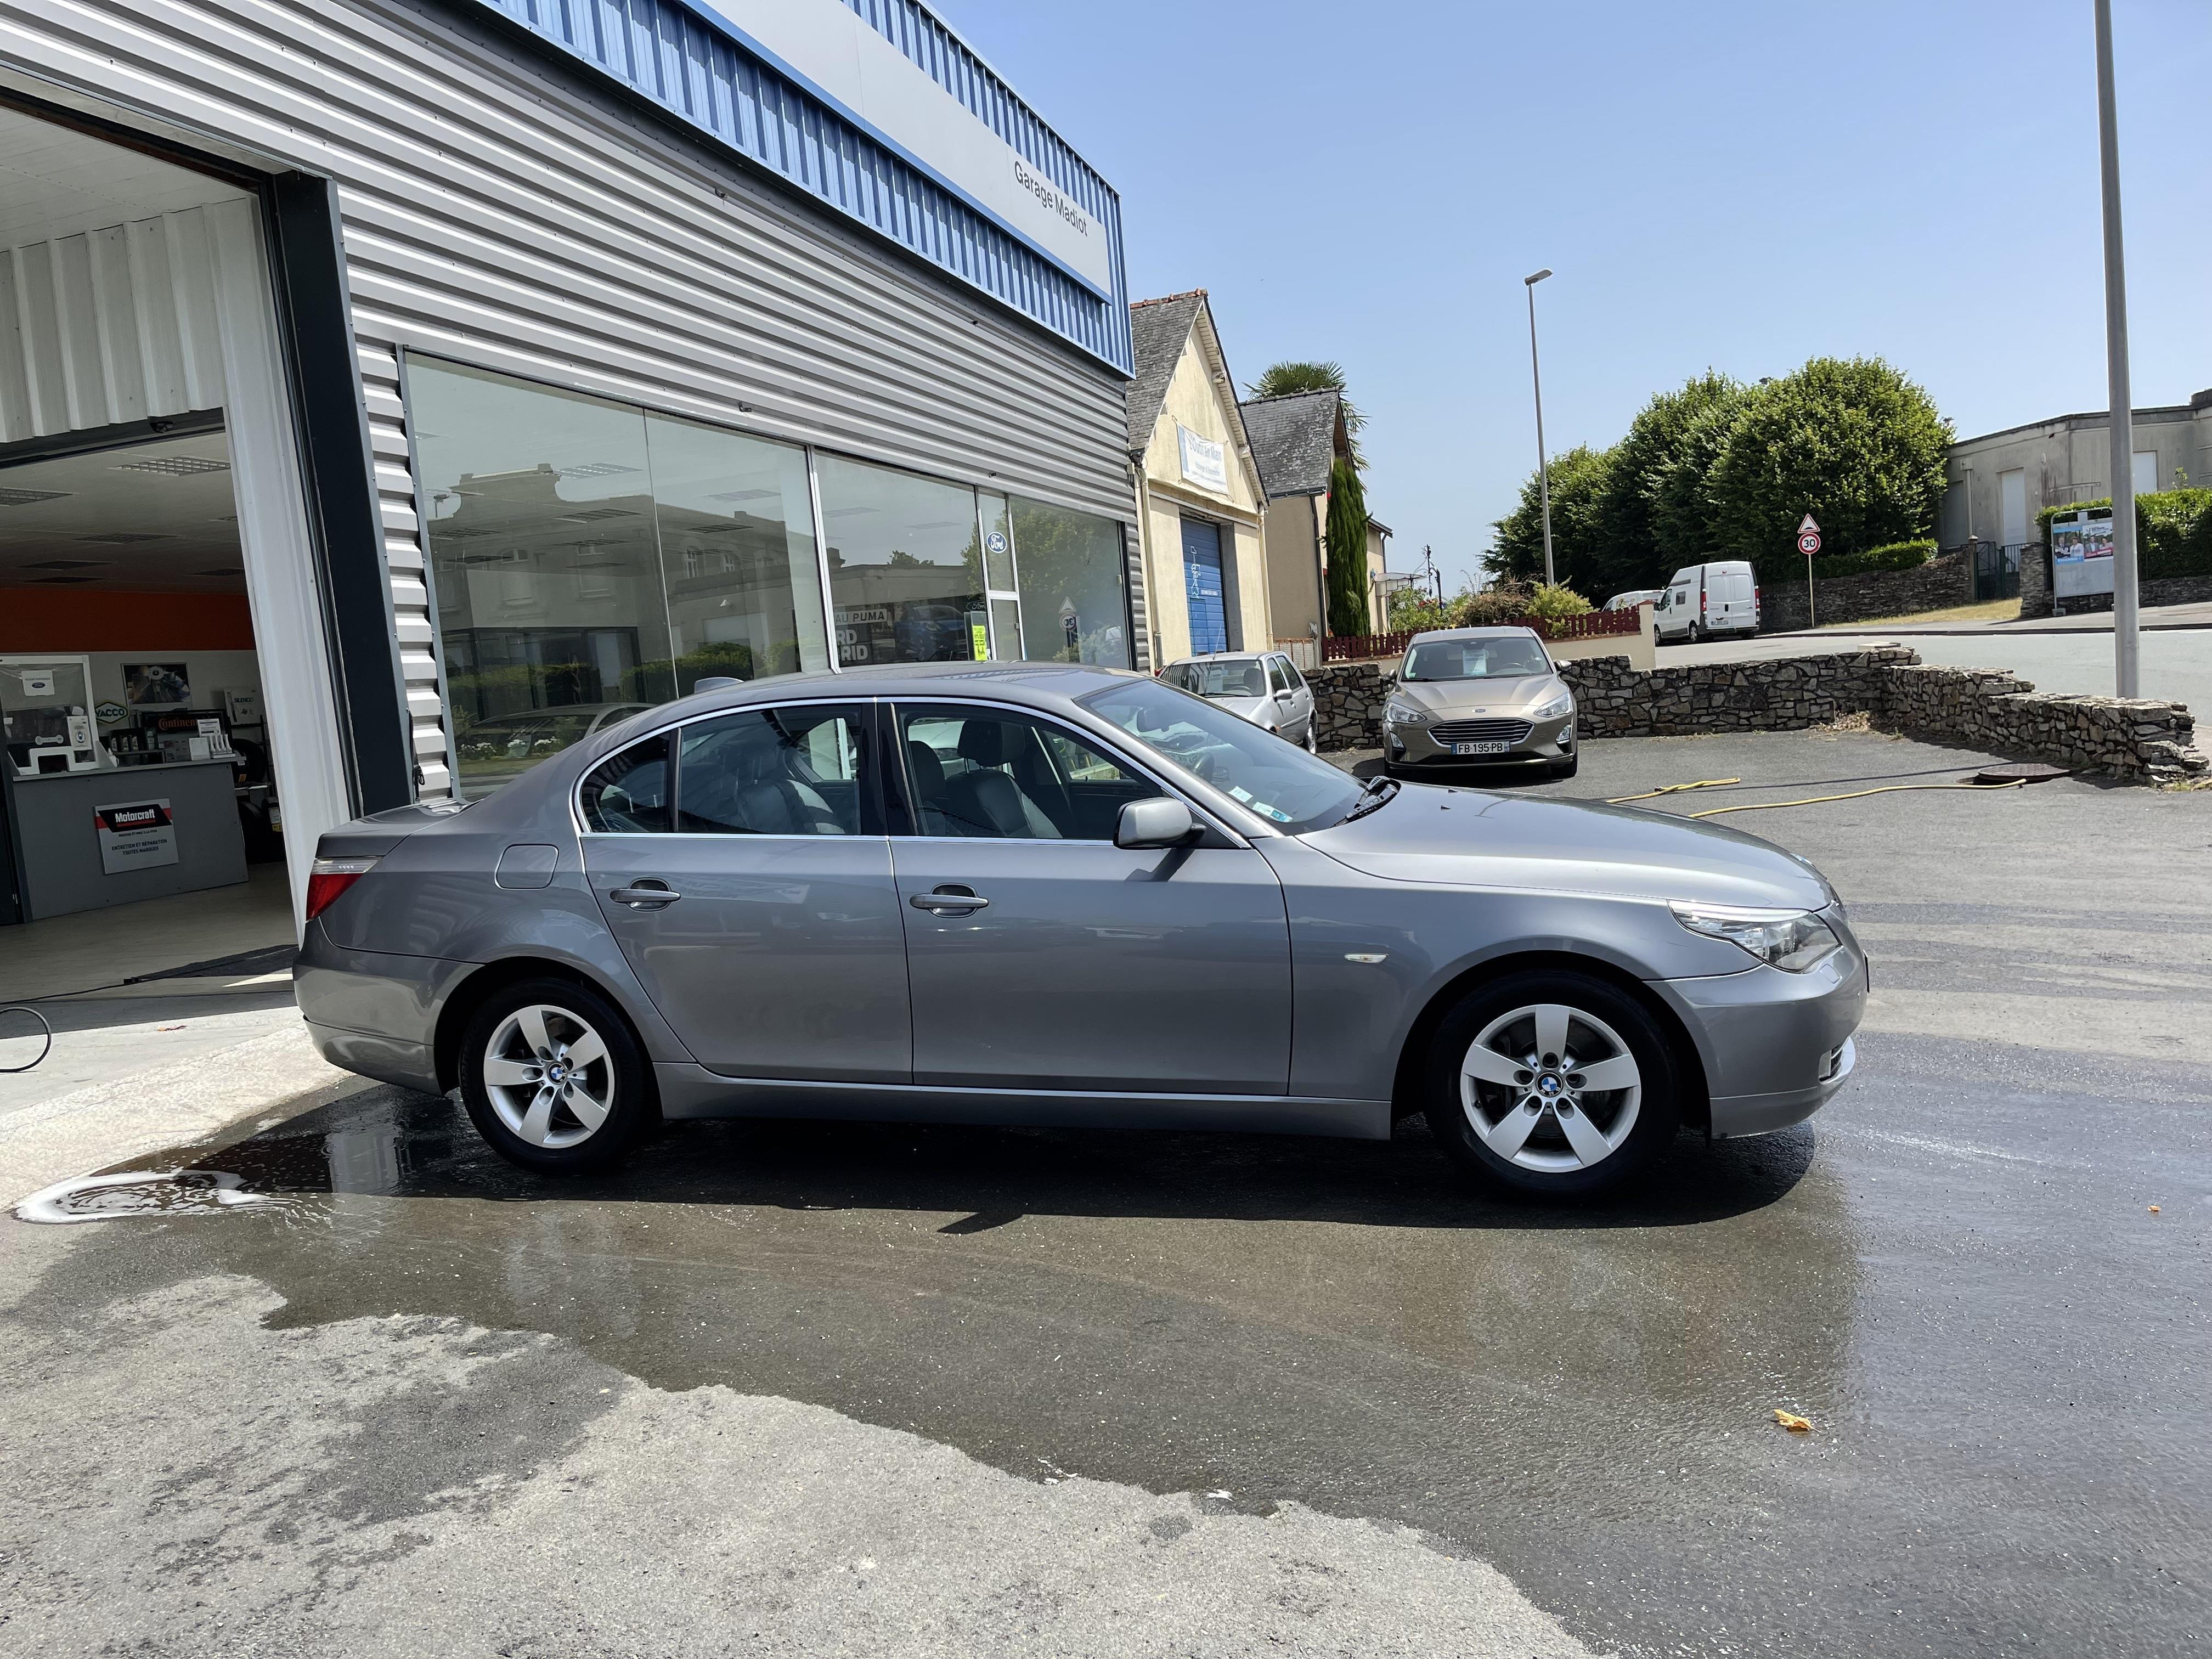 La BMW Série 5 “E60” d'occasion : prix à partir de 11 000€, notre